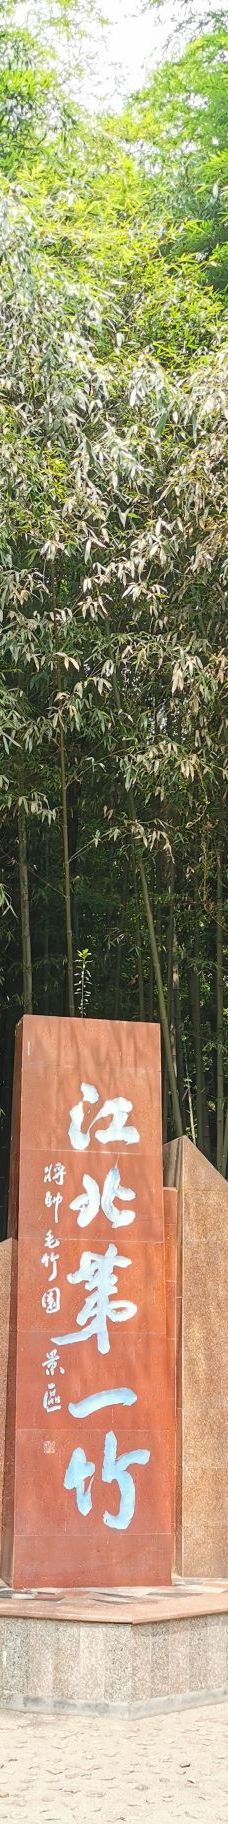 竹洞天风景区-日照